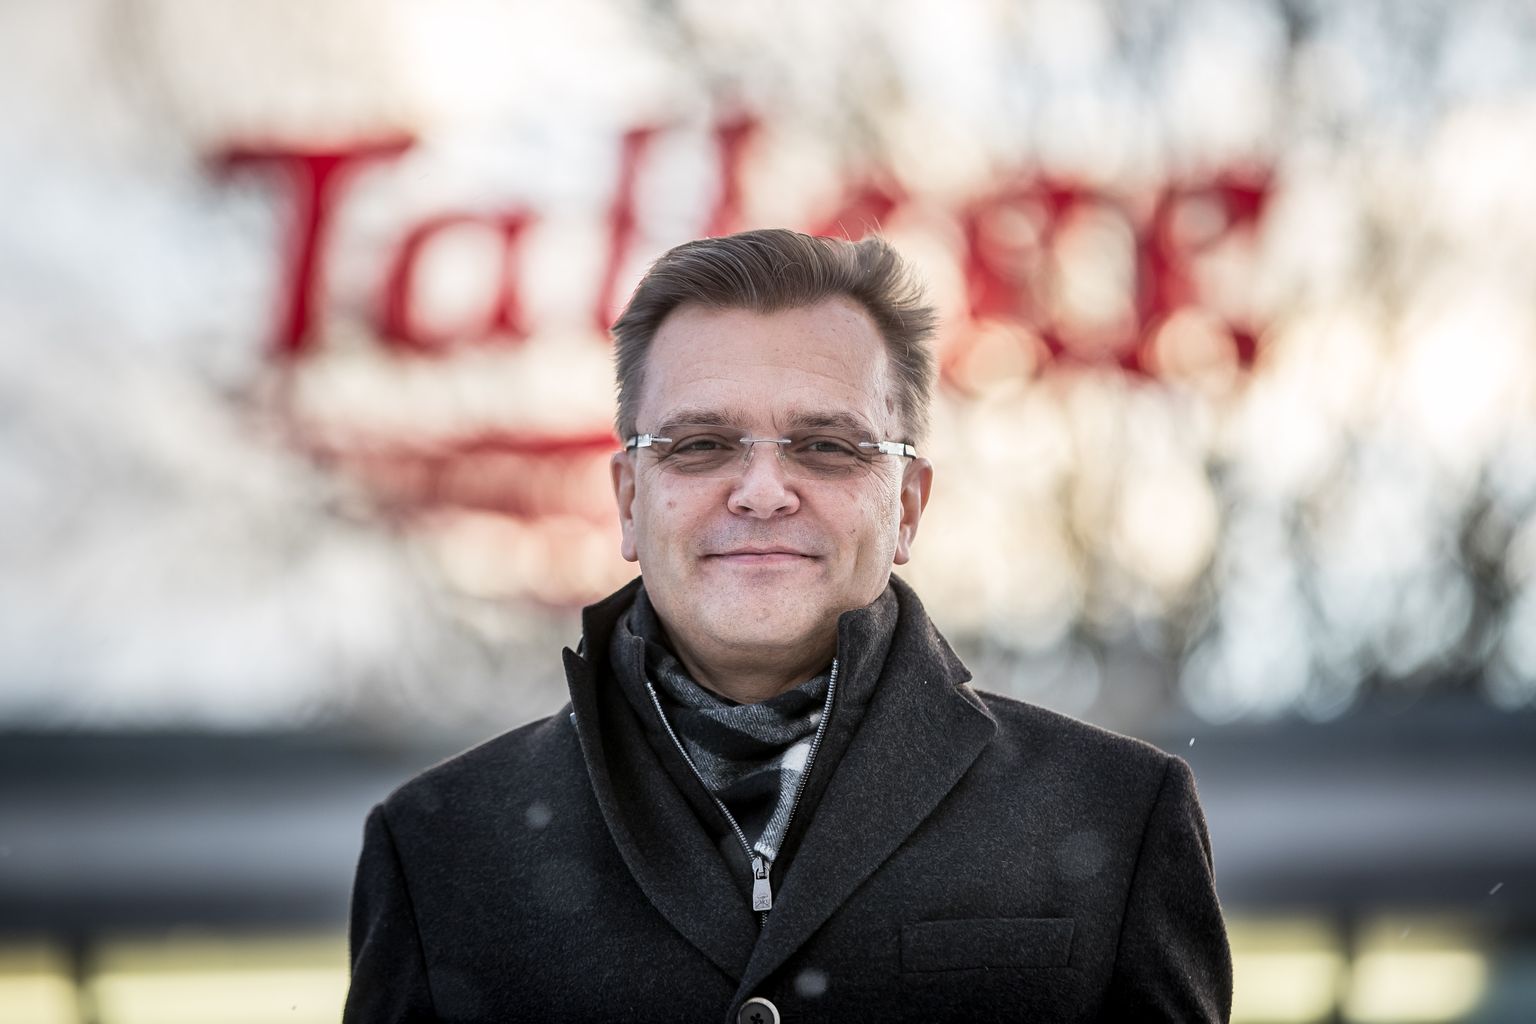 HKScani juht Jari Latvanen eile Loo alevikus kontserni kuuluva Talleggi kontori ees.